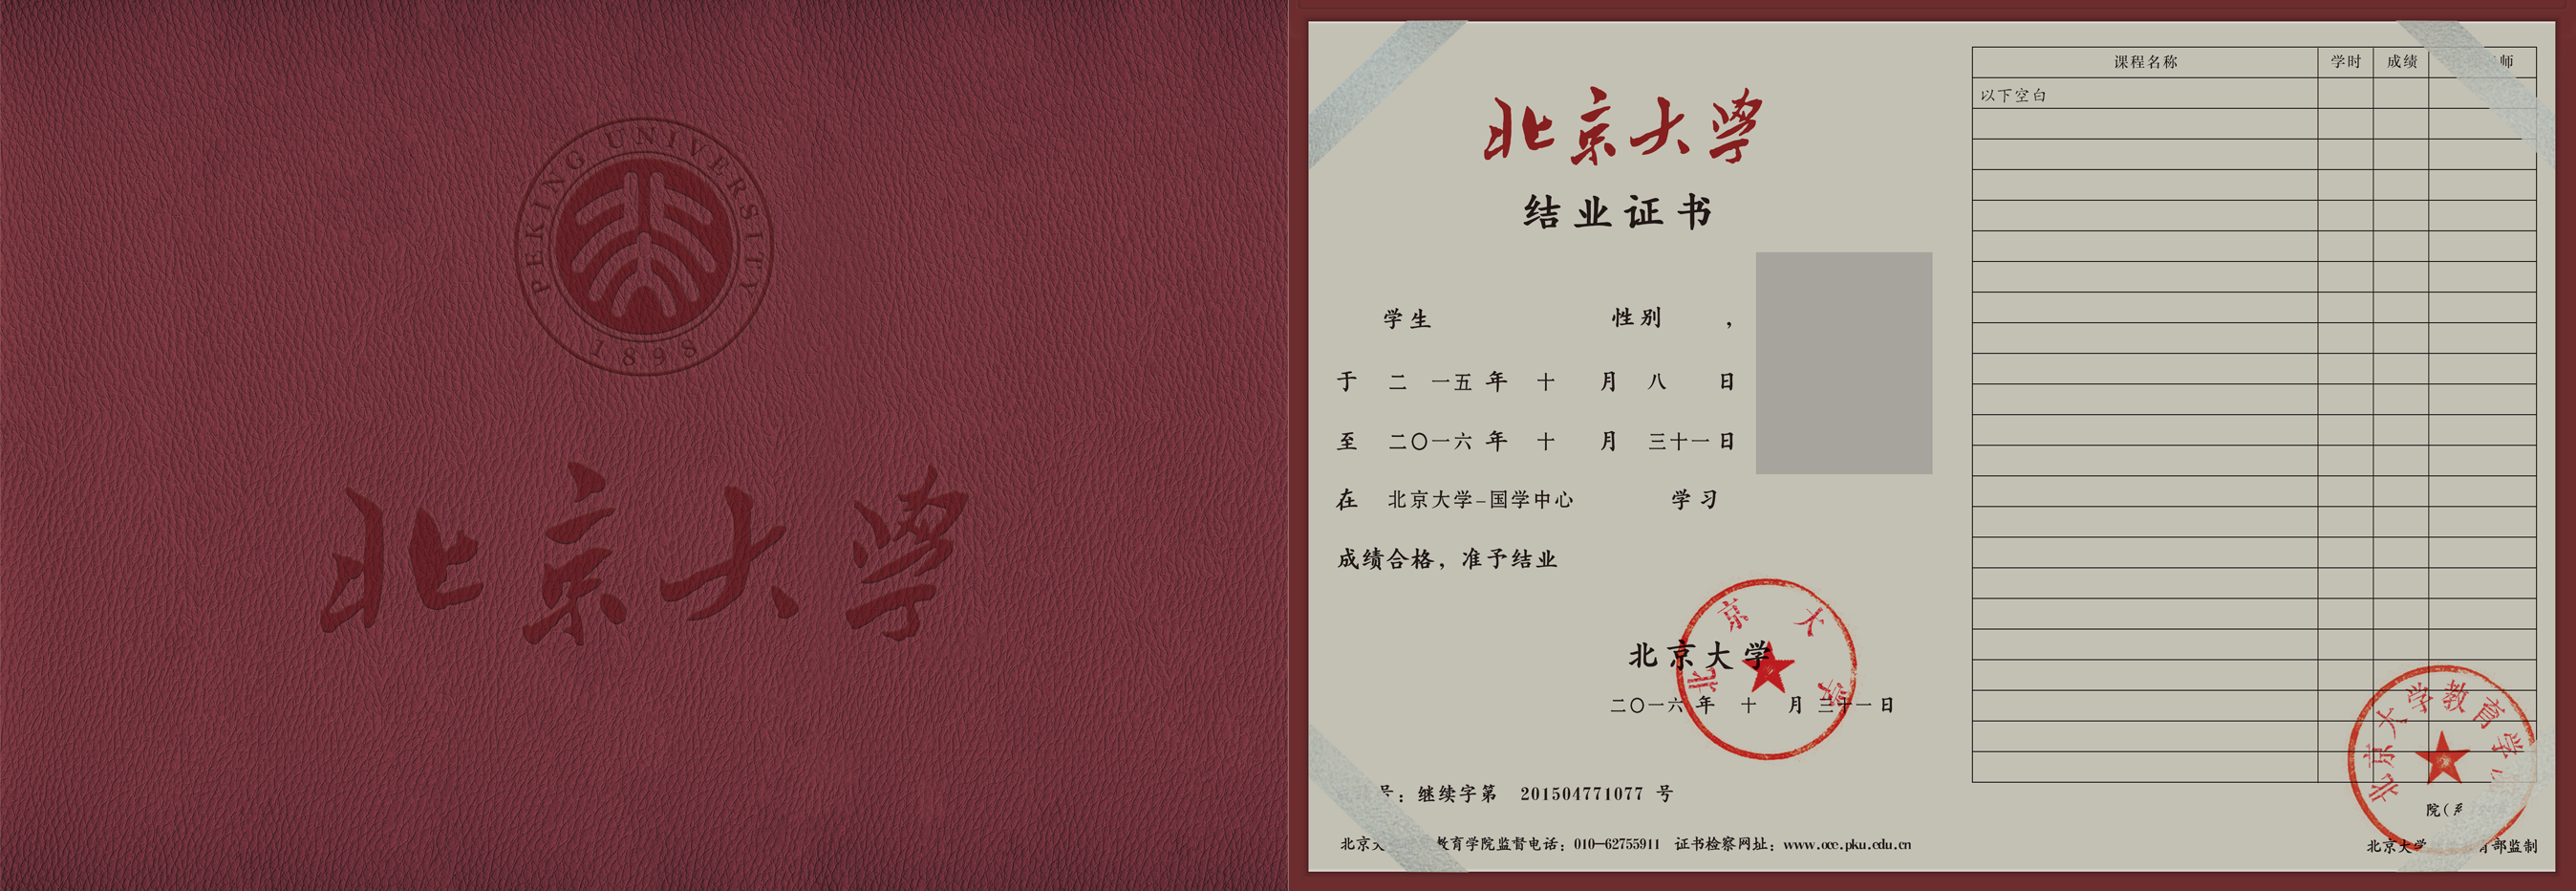 并加盖北京大学,北京大学教育学院印章的结业证书